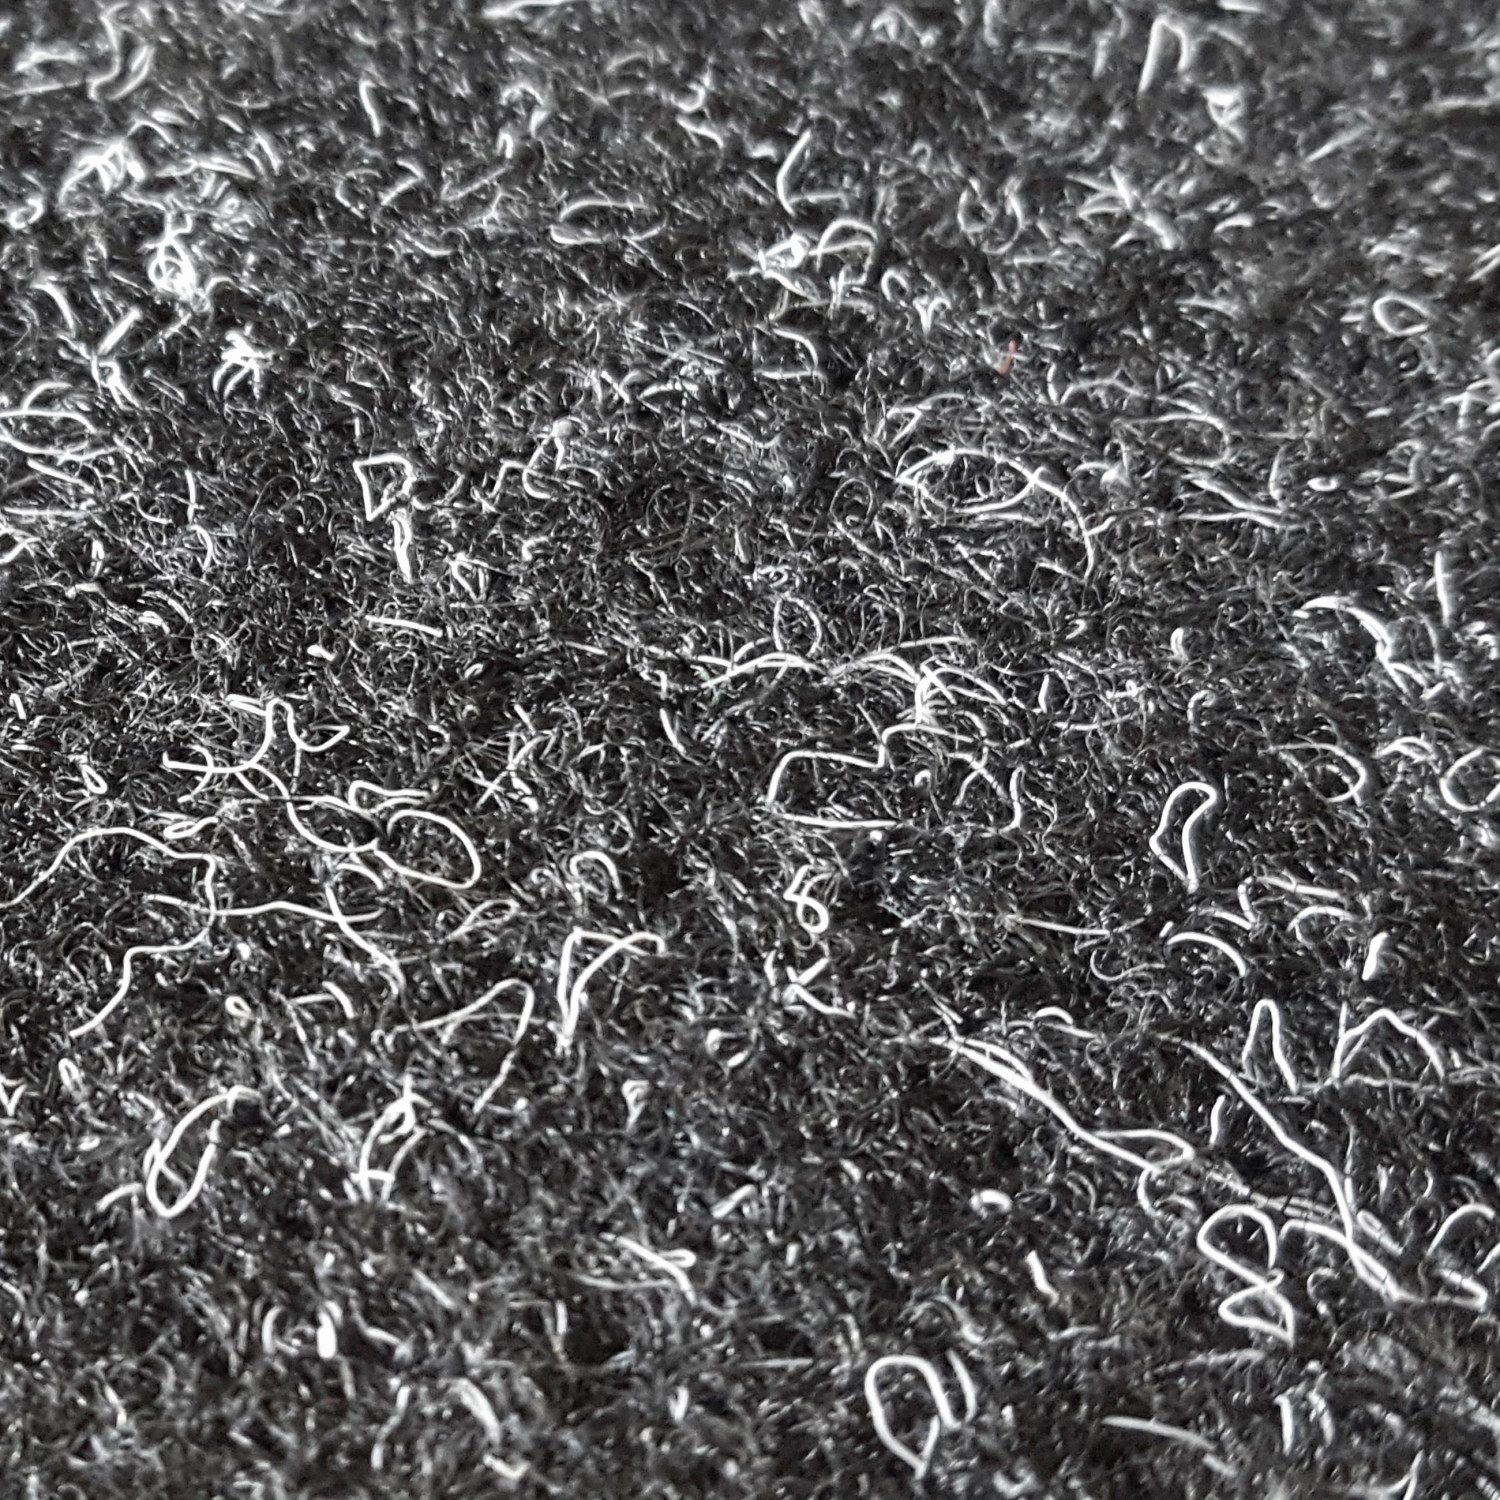 Teppichboden Nadelfilz Invita sand 400 cm breit (Meterware)